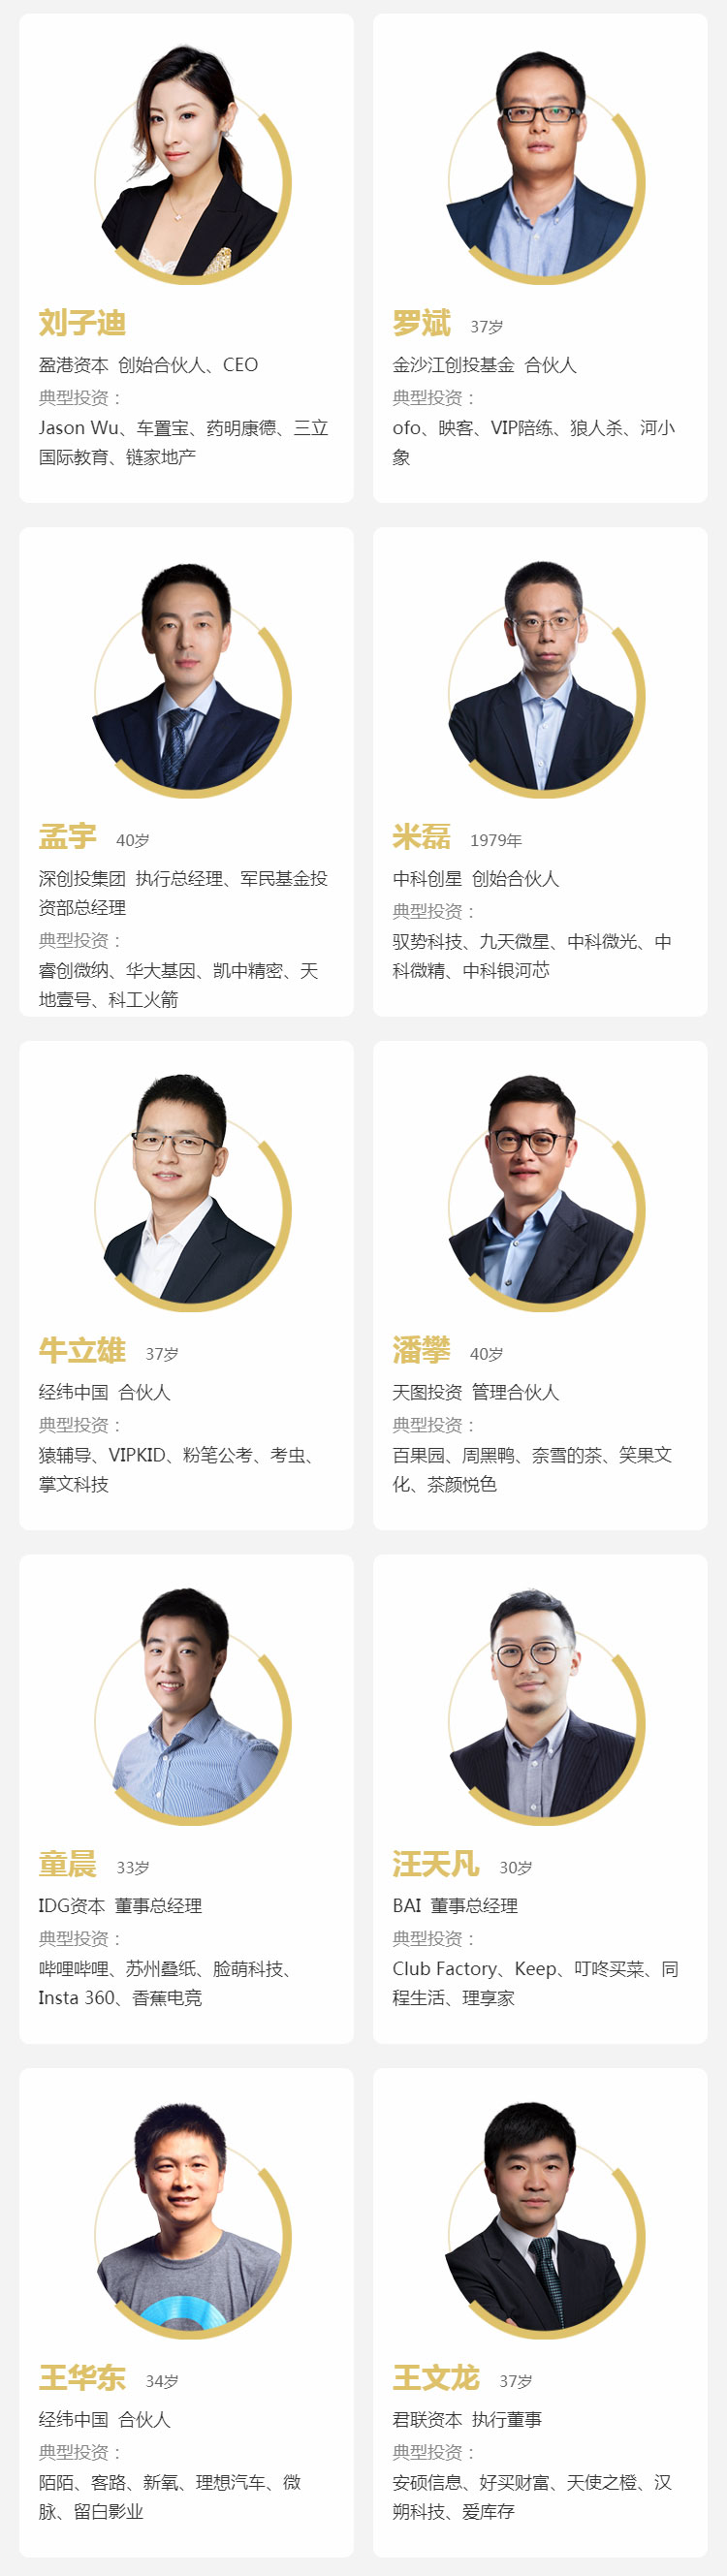 2019「F40中国青年投资人榜单」揭晓